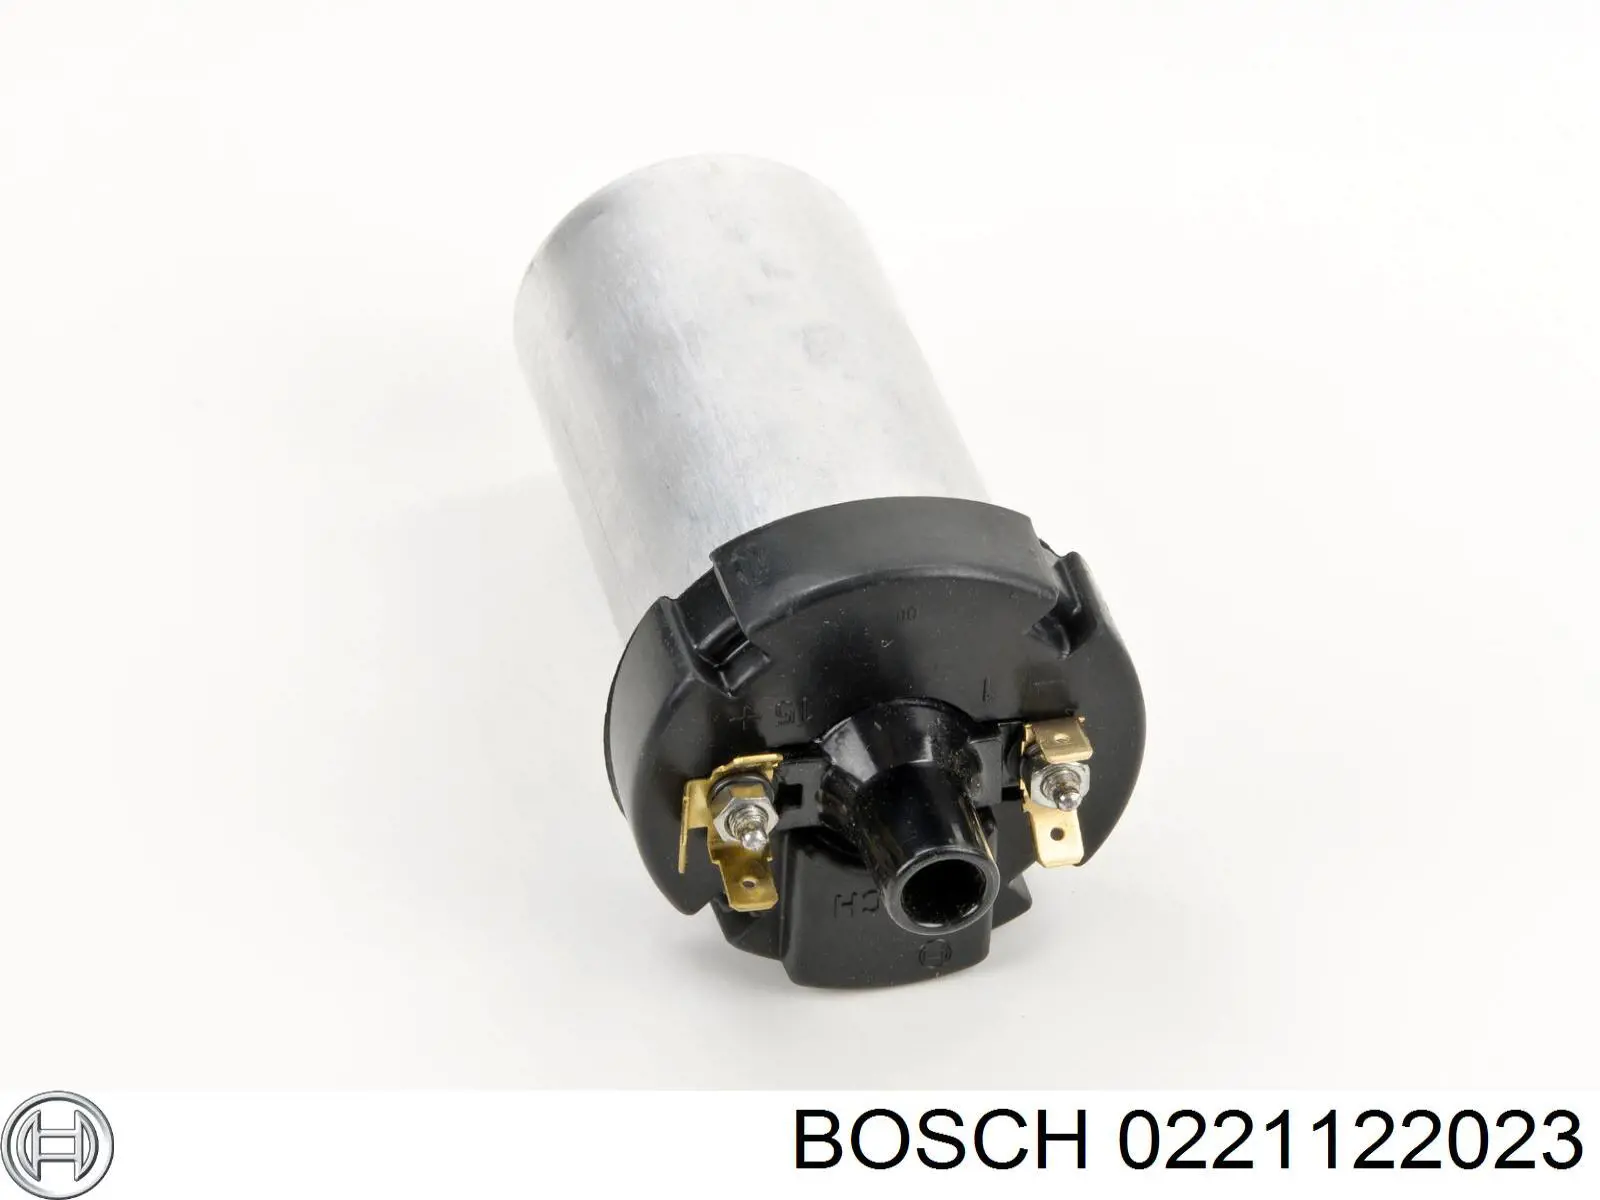 Bobina de encendido 0221122023 Bosch